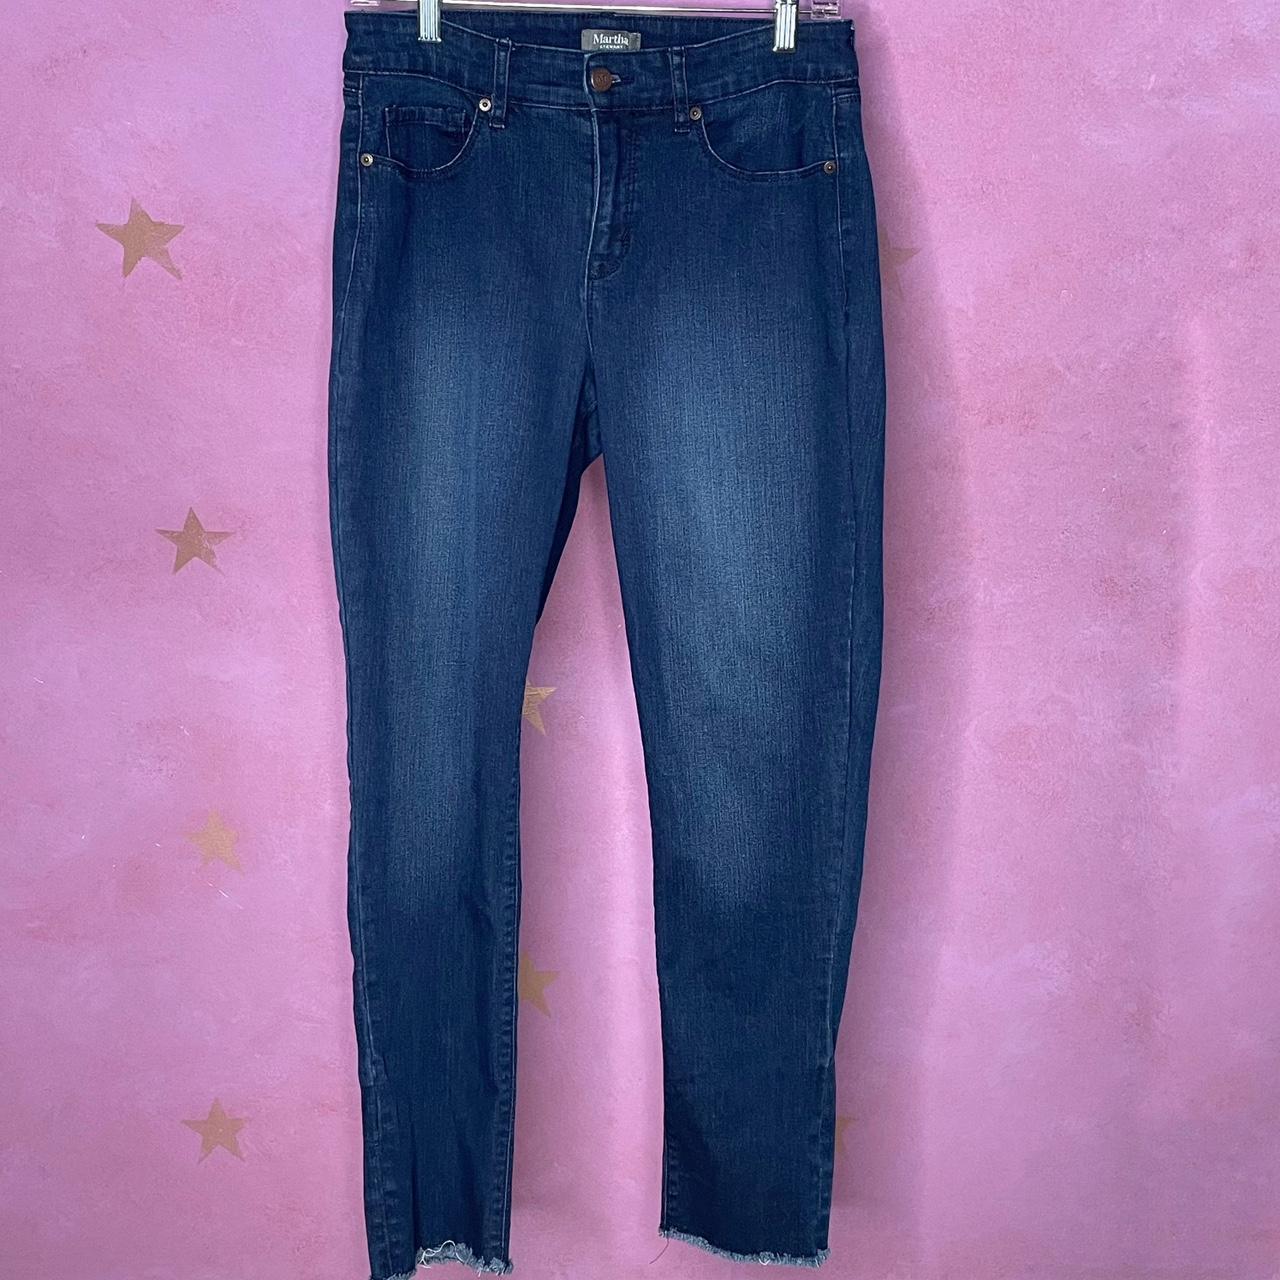 Martha Stewart Collection Women's Jeans